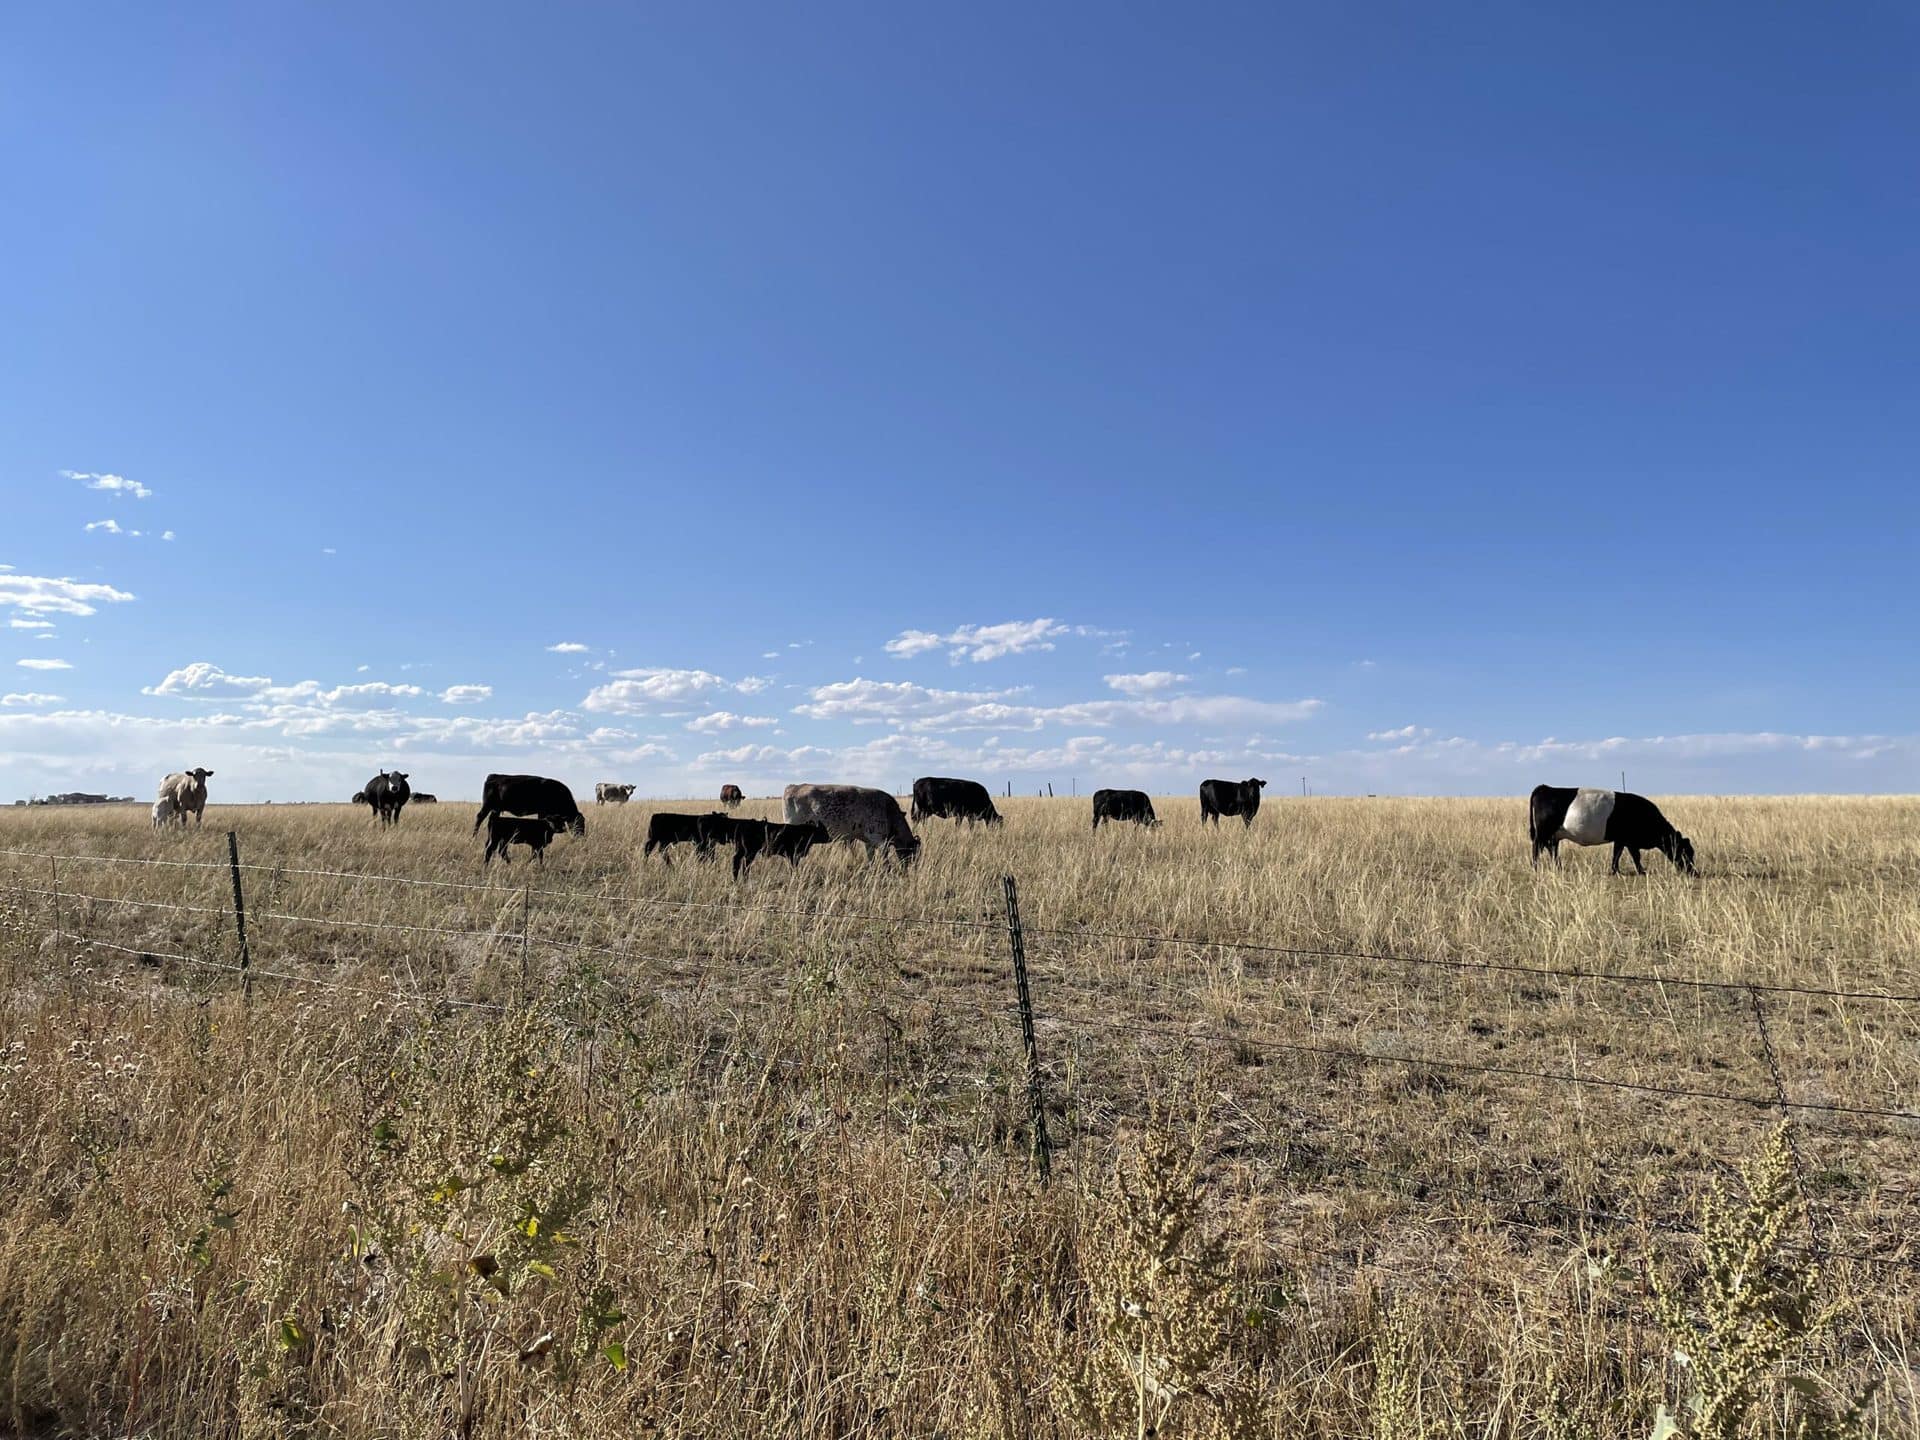 Cows in a field near a campsite.